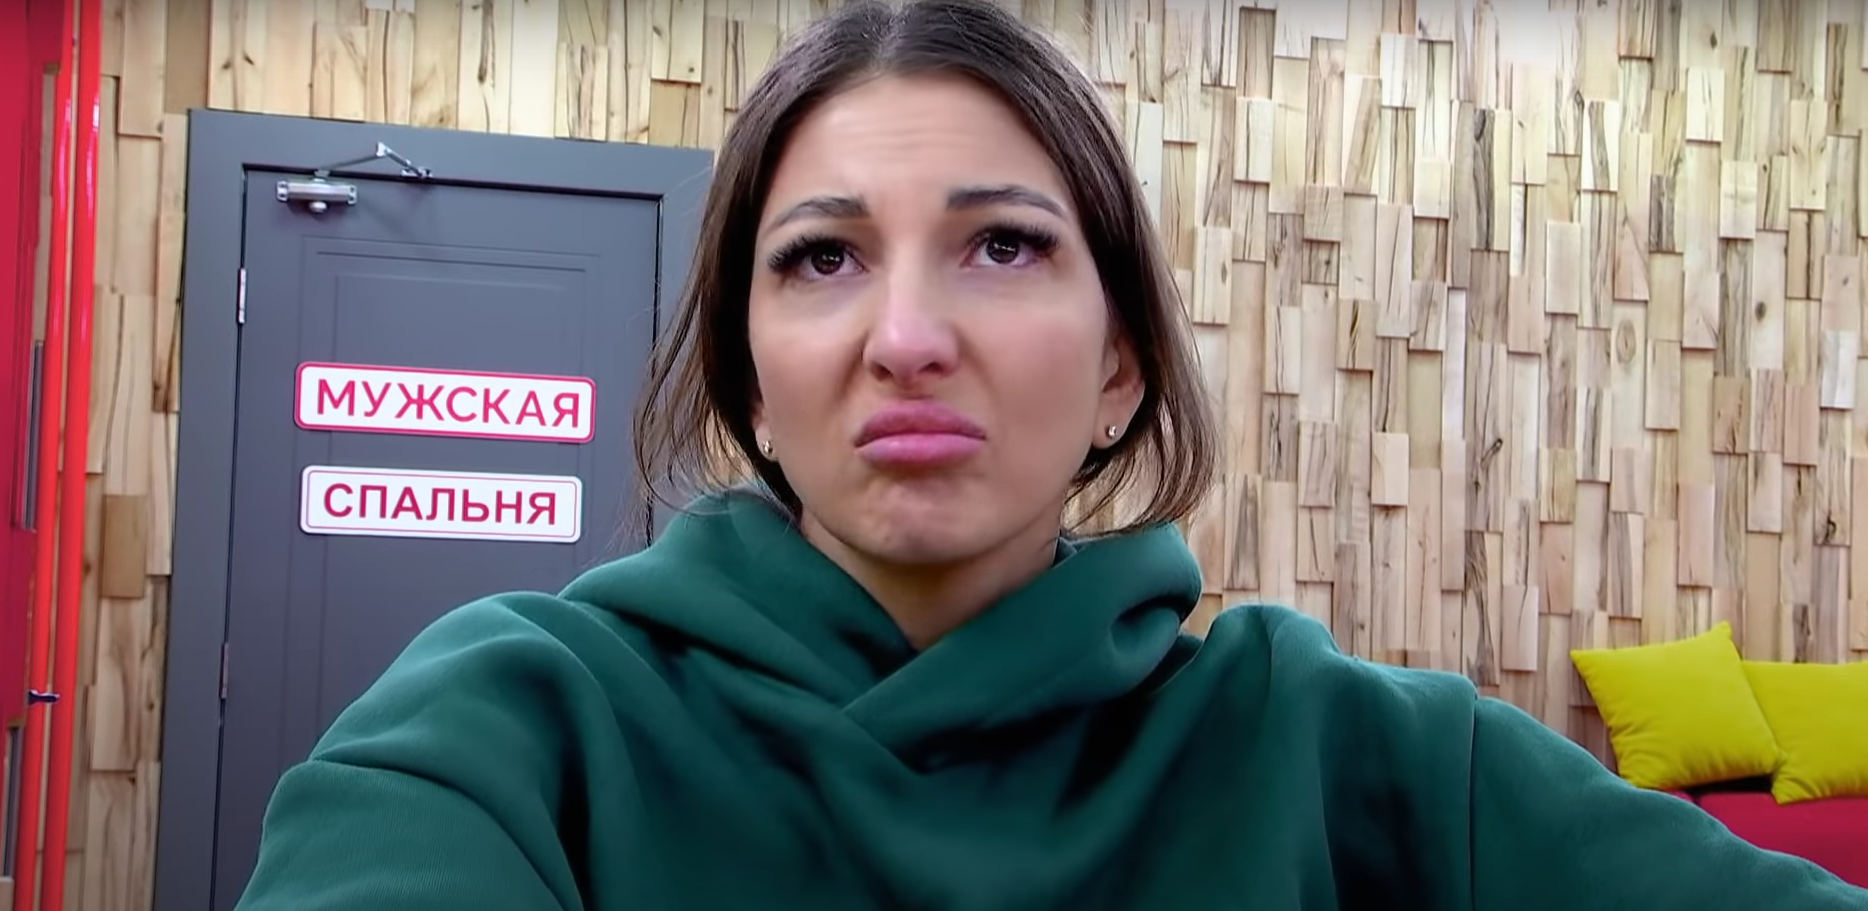 Яна Захарова выбирает клинику, чтобы увеличить бюст